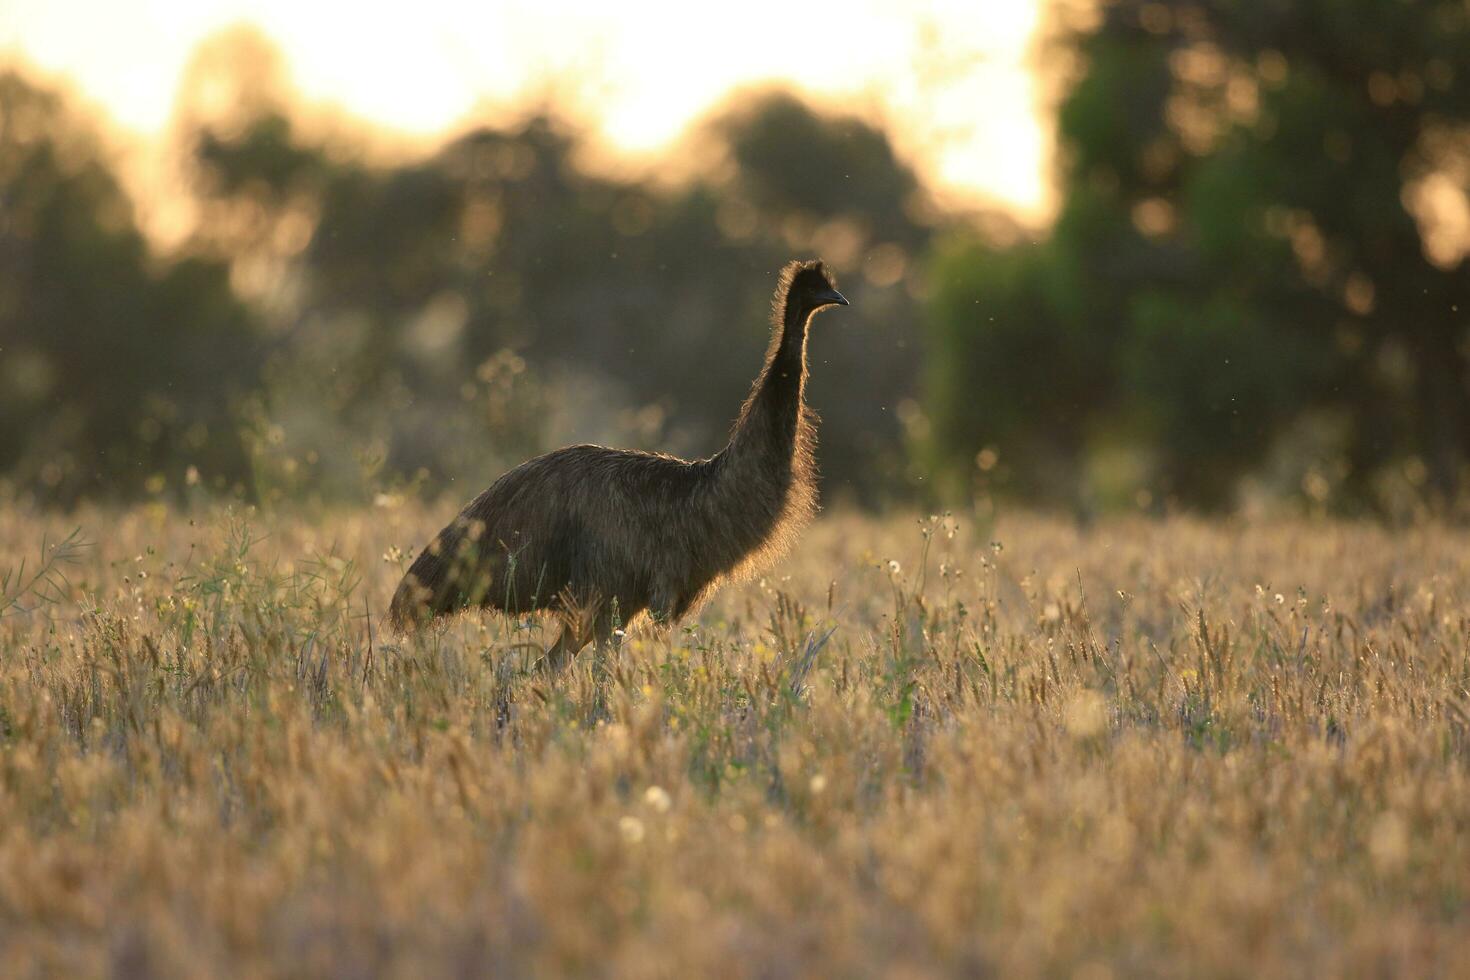 Emu endemisch Vogel von Australien foto